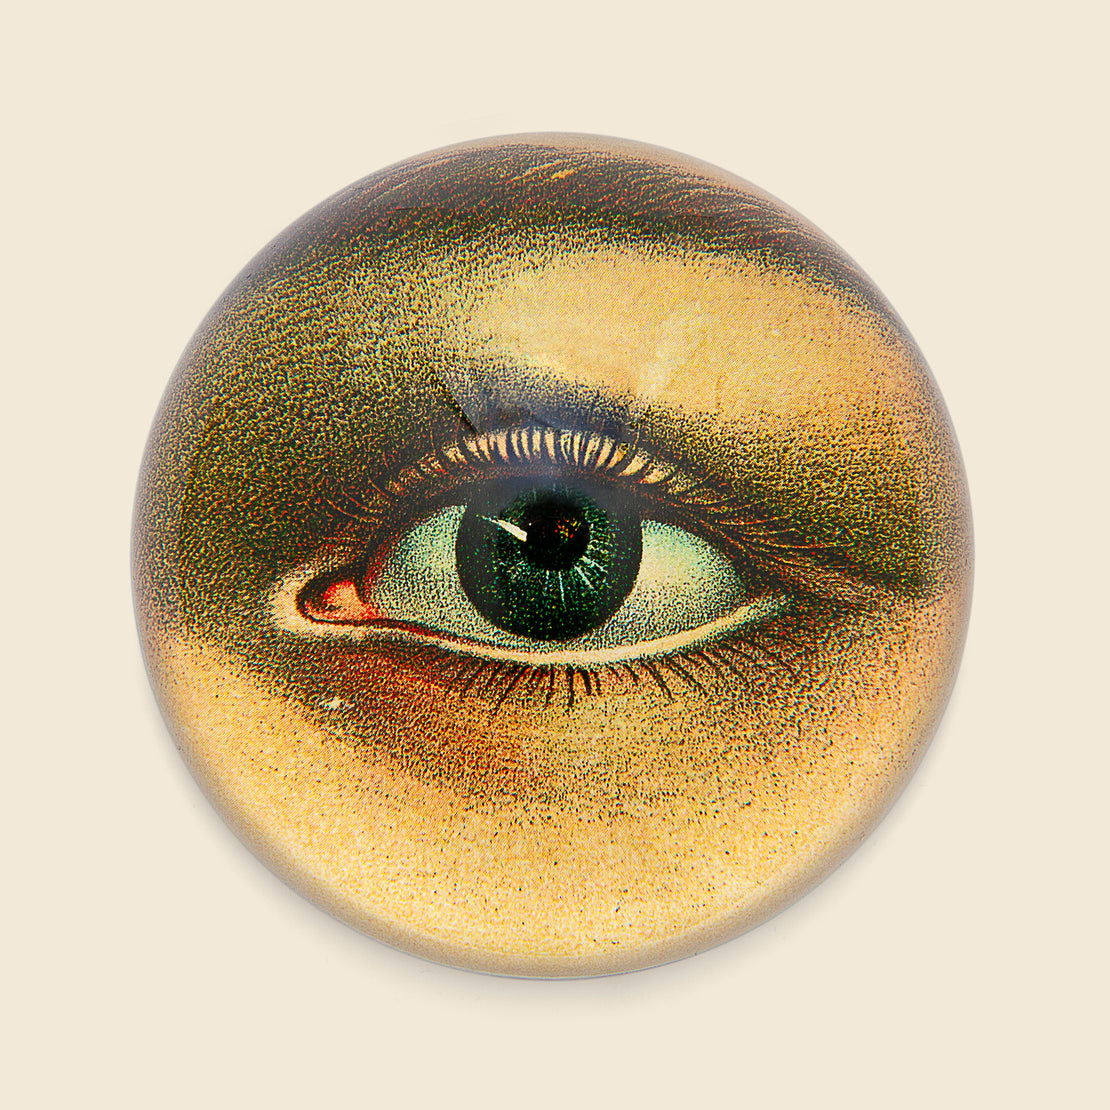 John Derian Dome Paperweight - Left Eye